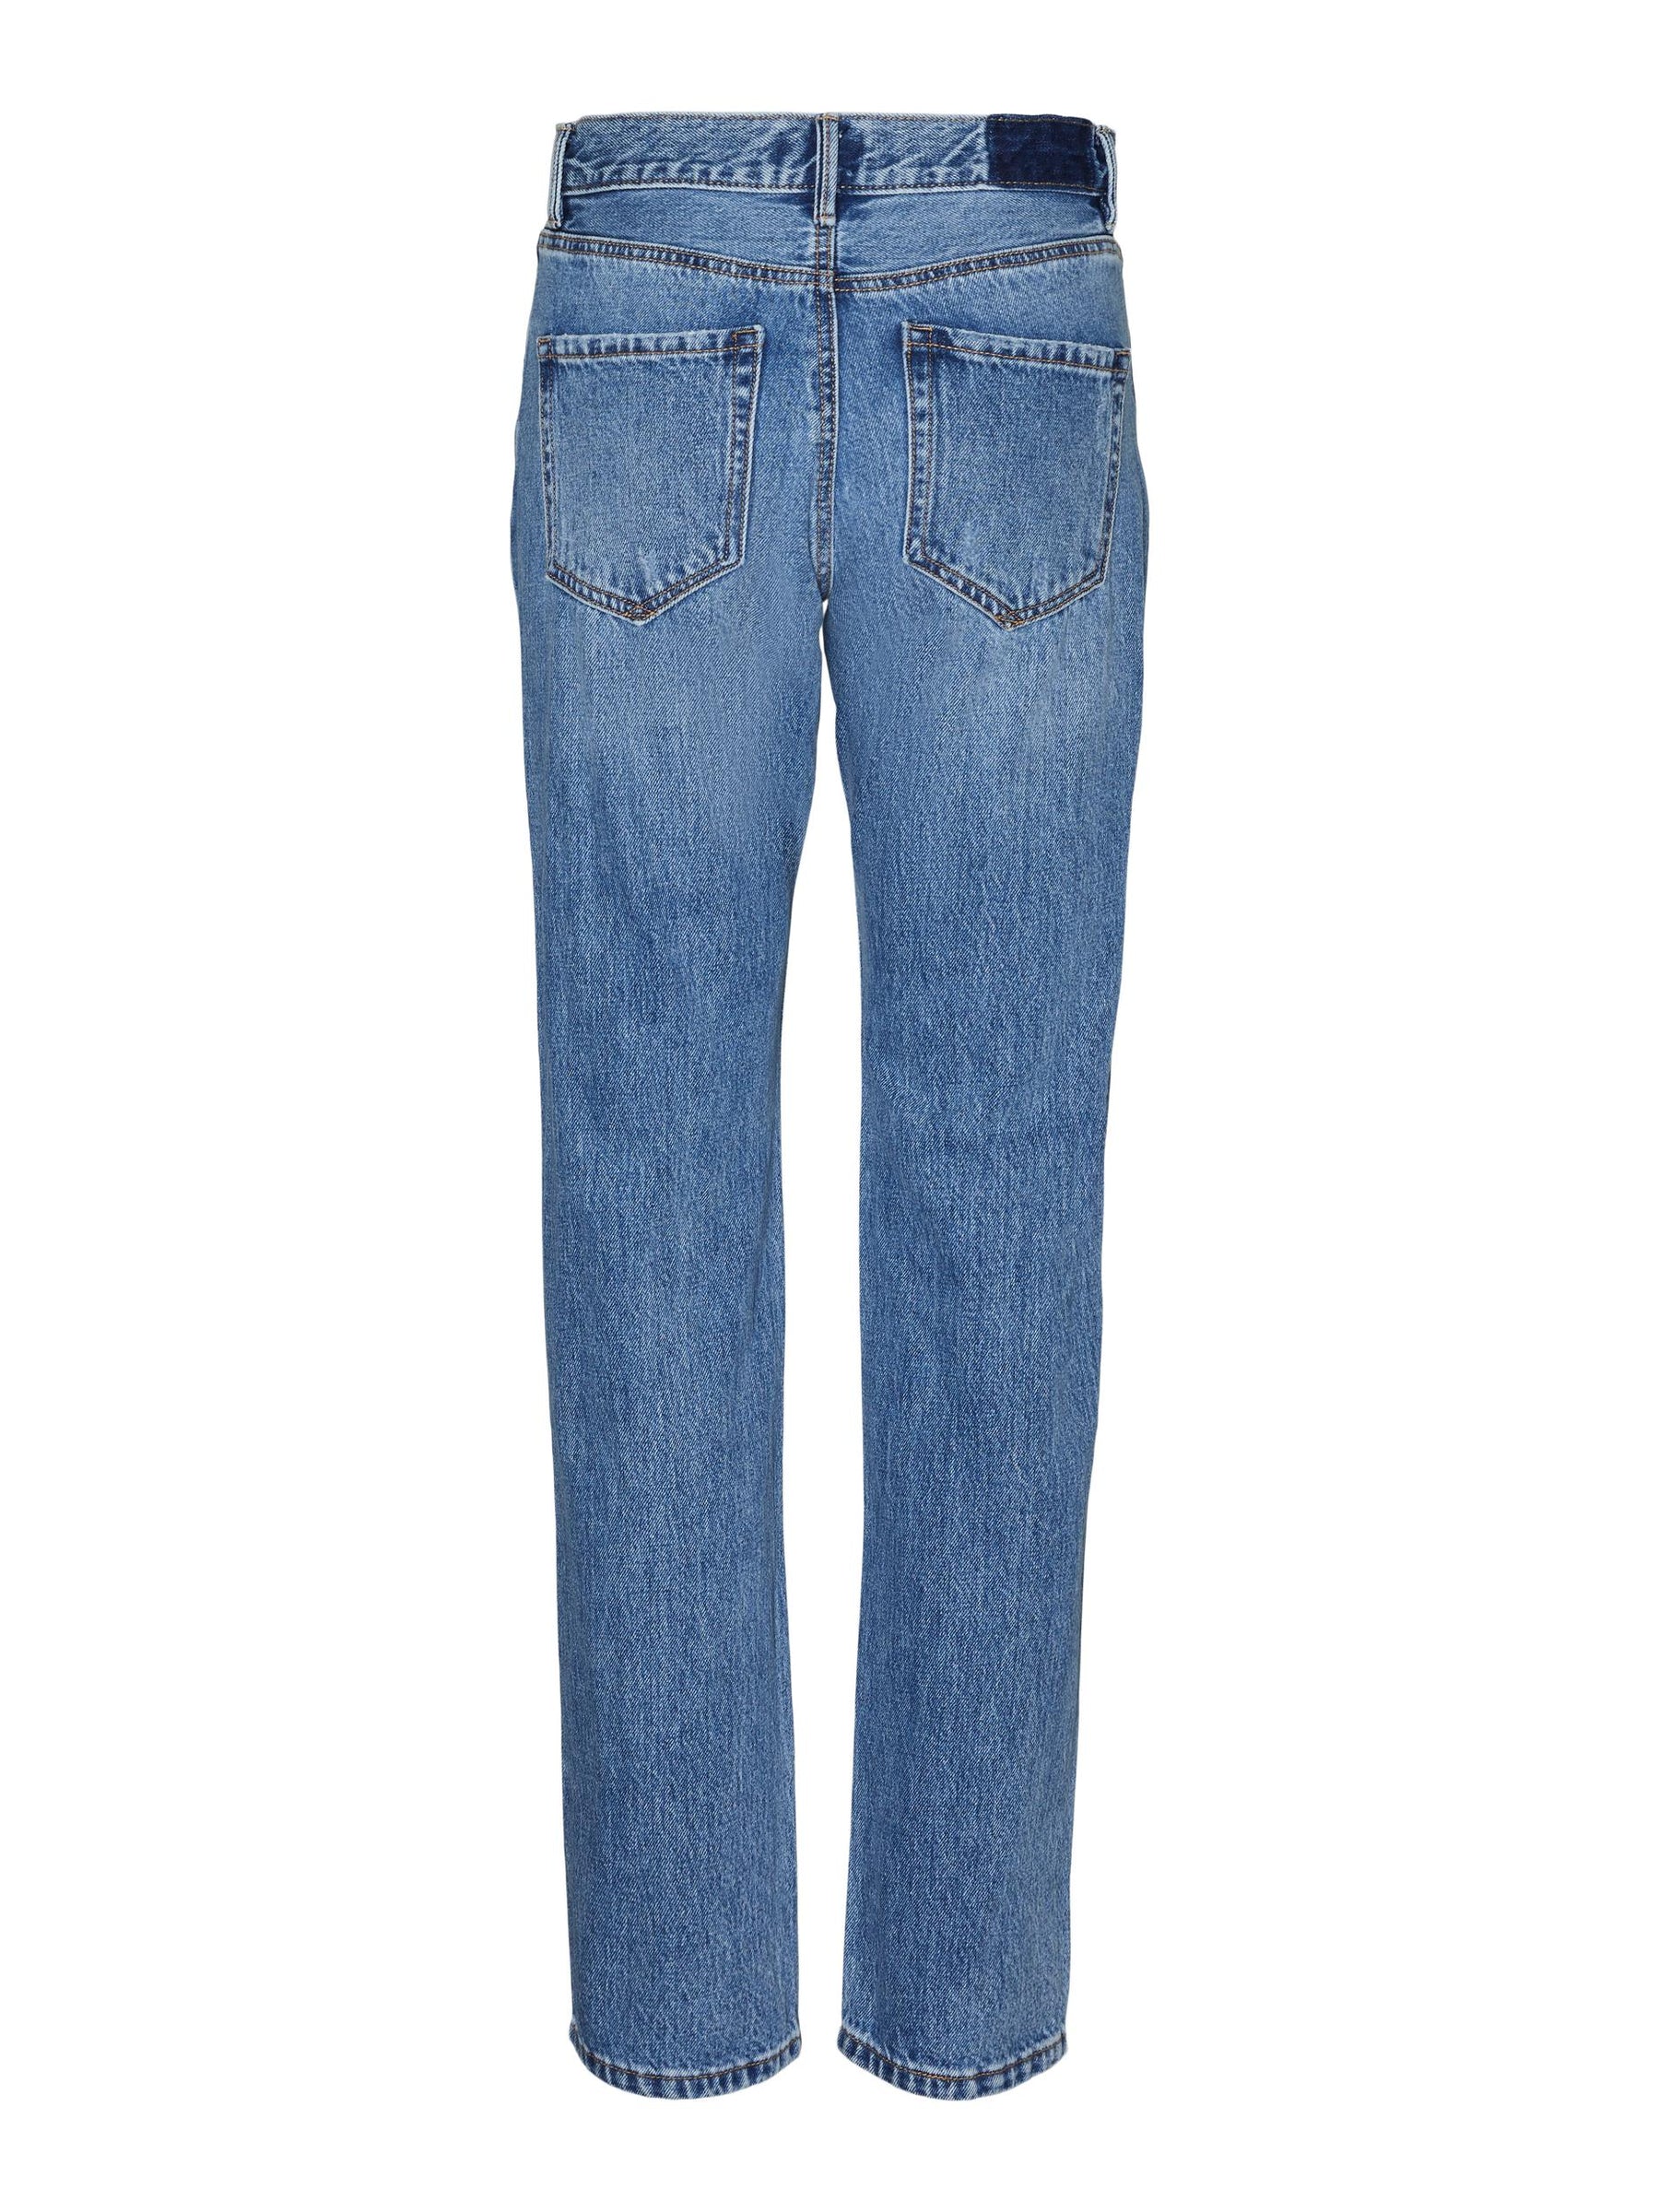 ג'ינס קלאסי בגזרה ישרה /אורך ארוך במיוחד- Vero Moda |וורו מודה